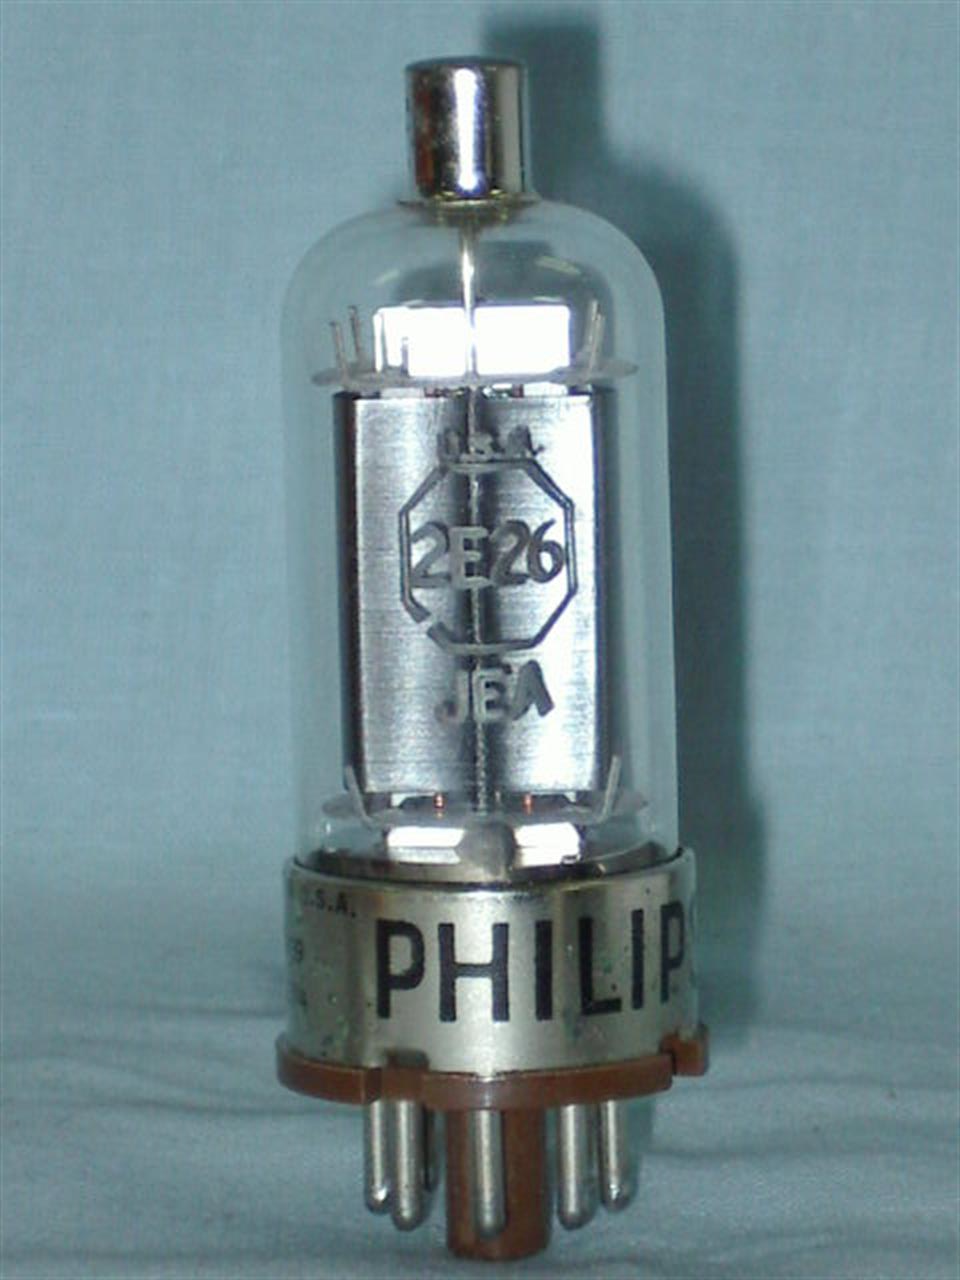 Válvula 2E26 Philips